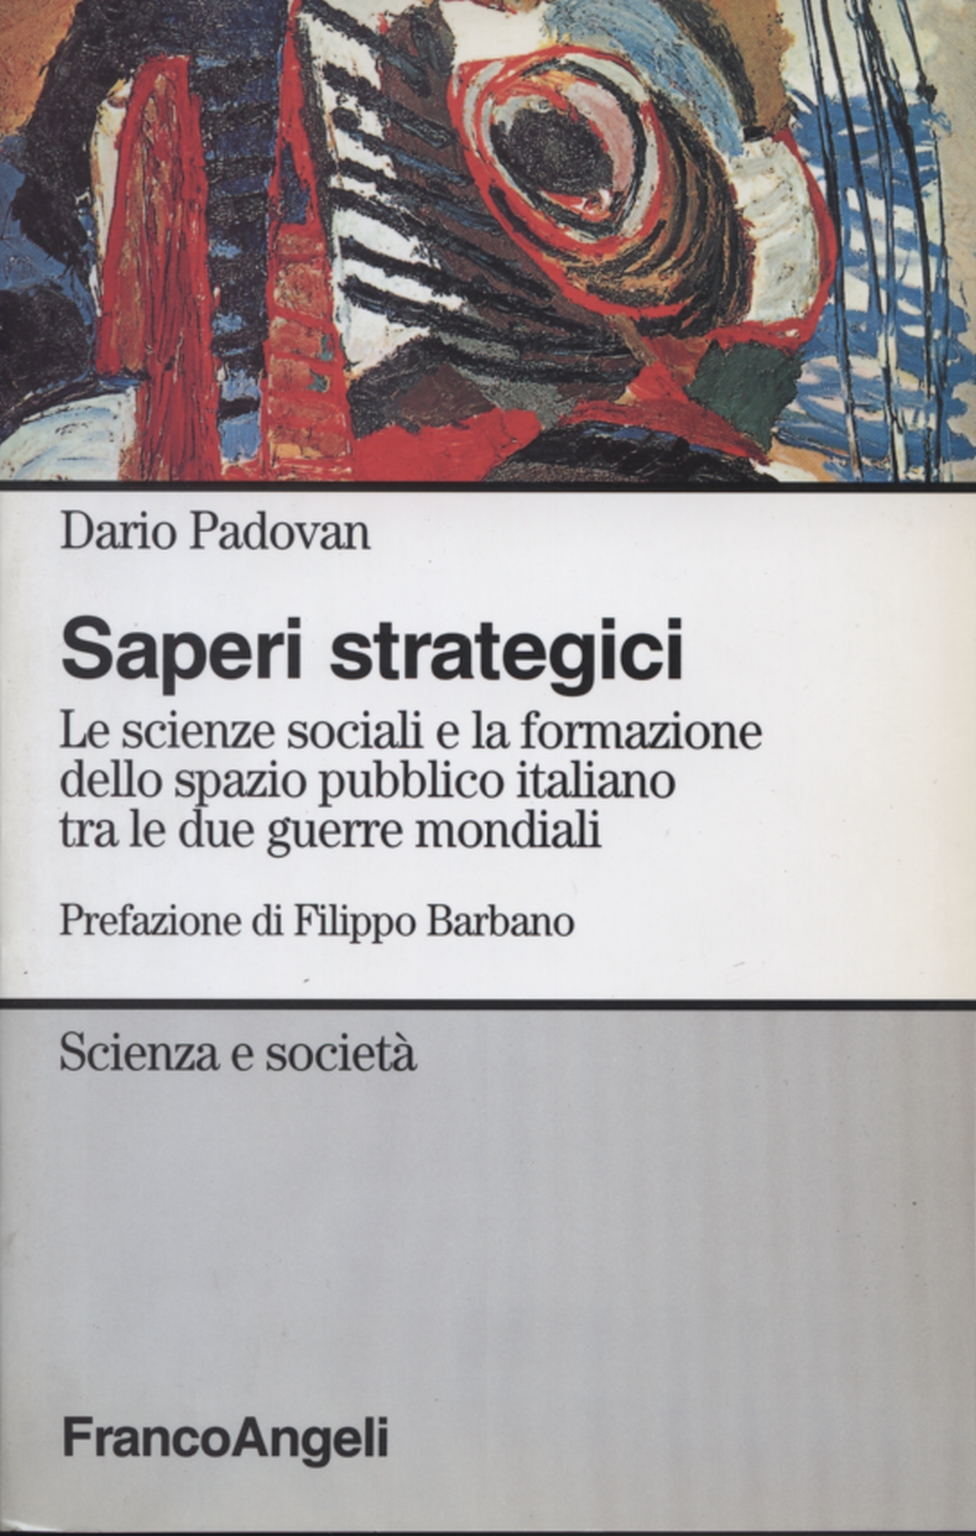 El conocimiento estratégico, Dario Padovan